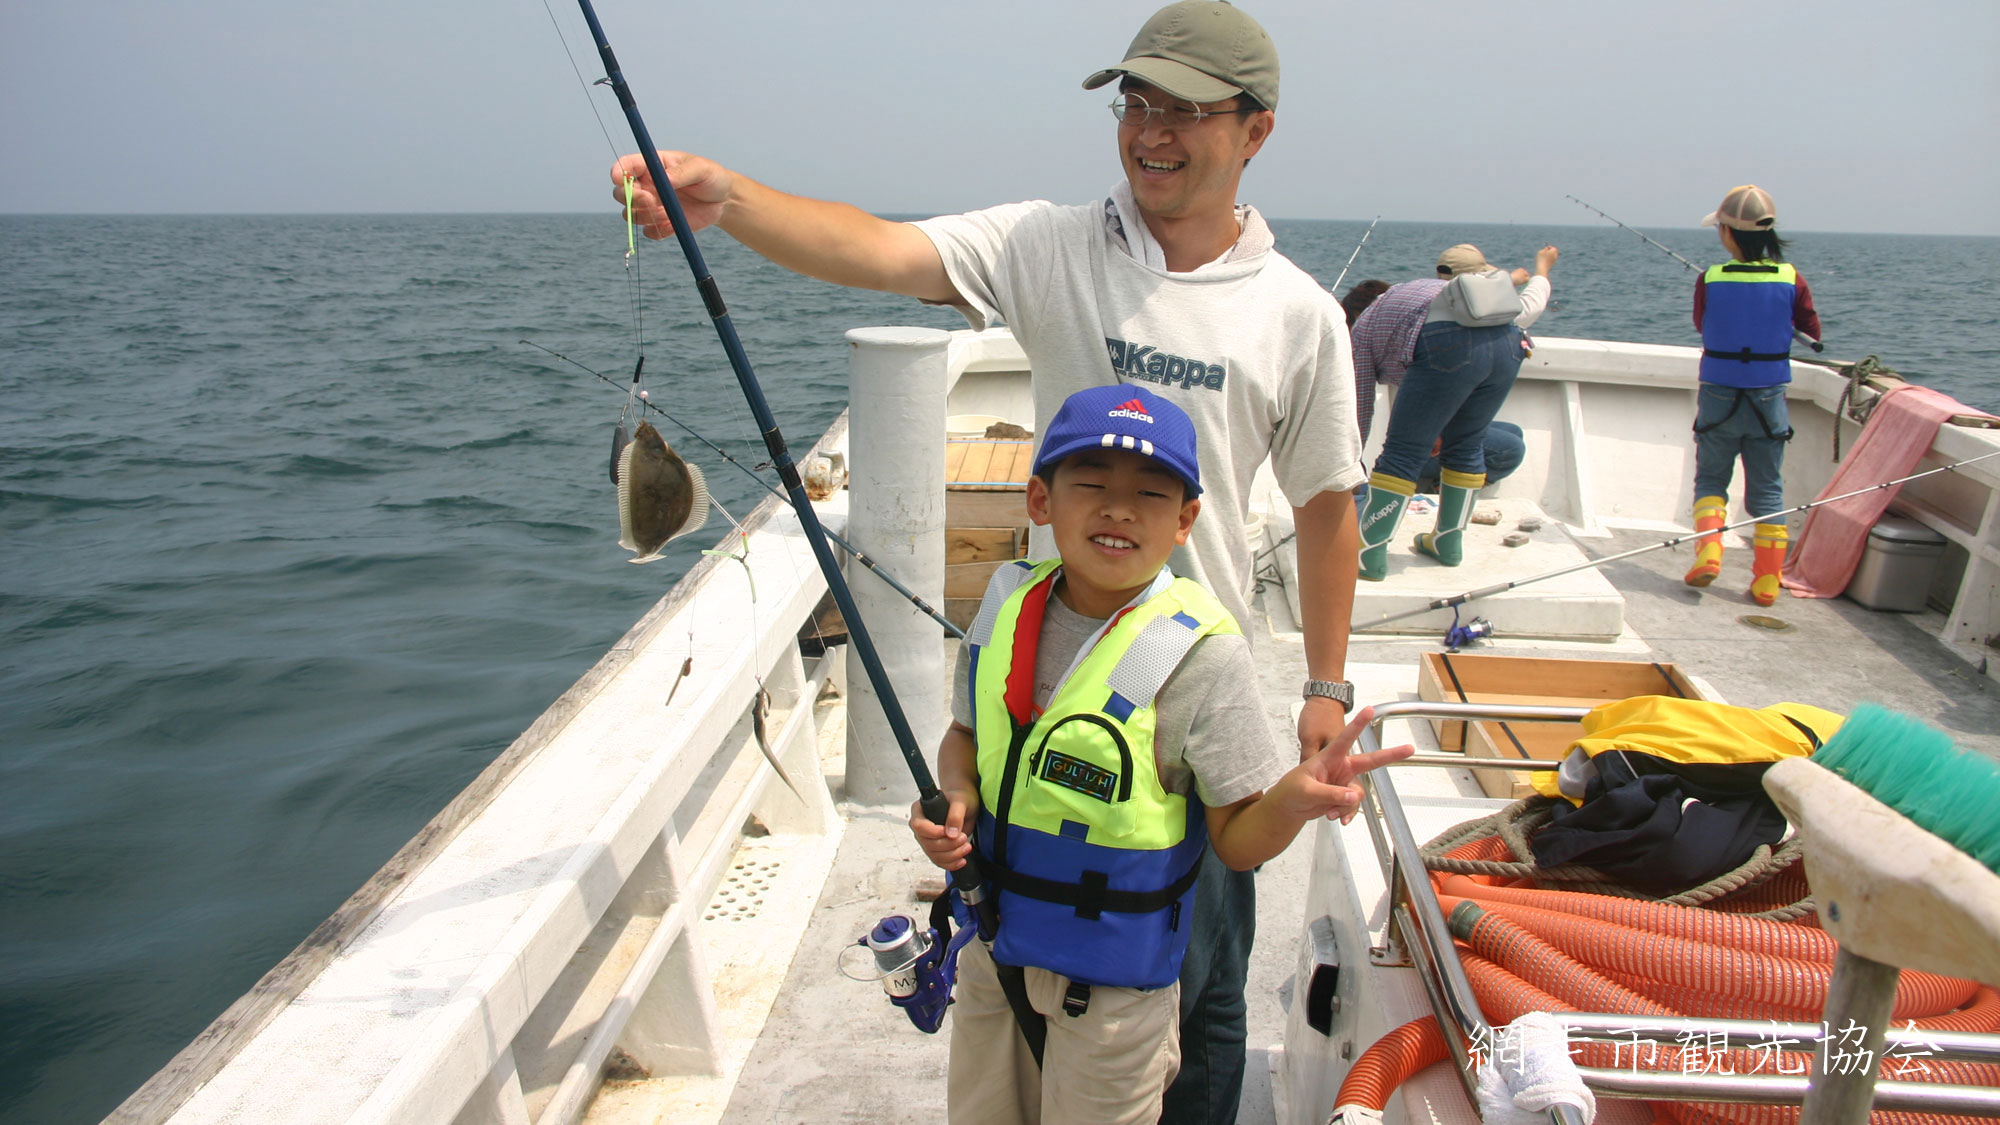 *［海釣り］オホーツク海は釣り天国。カレイ、カジカなどいろいろな魚が釣れます♪